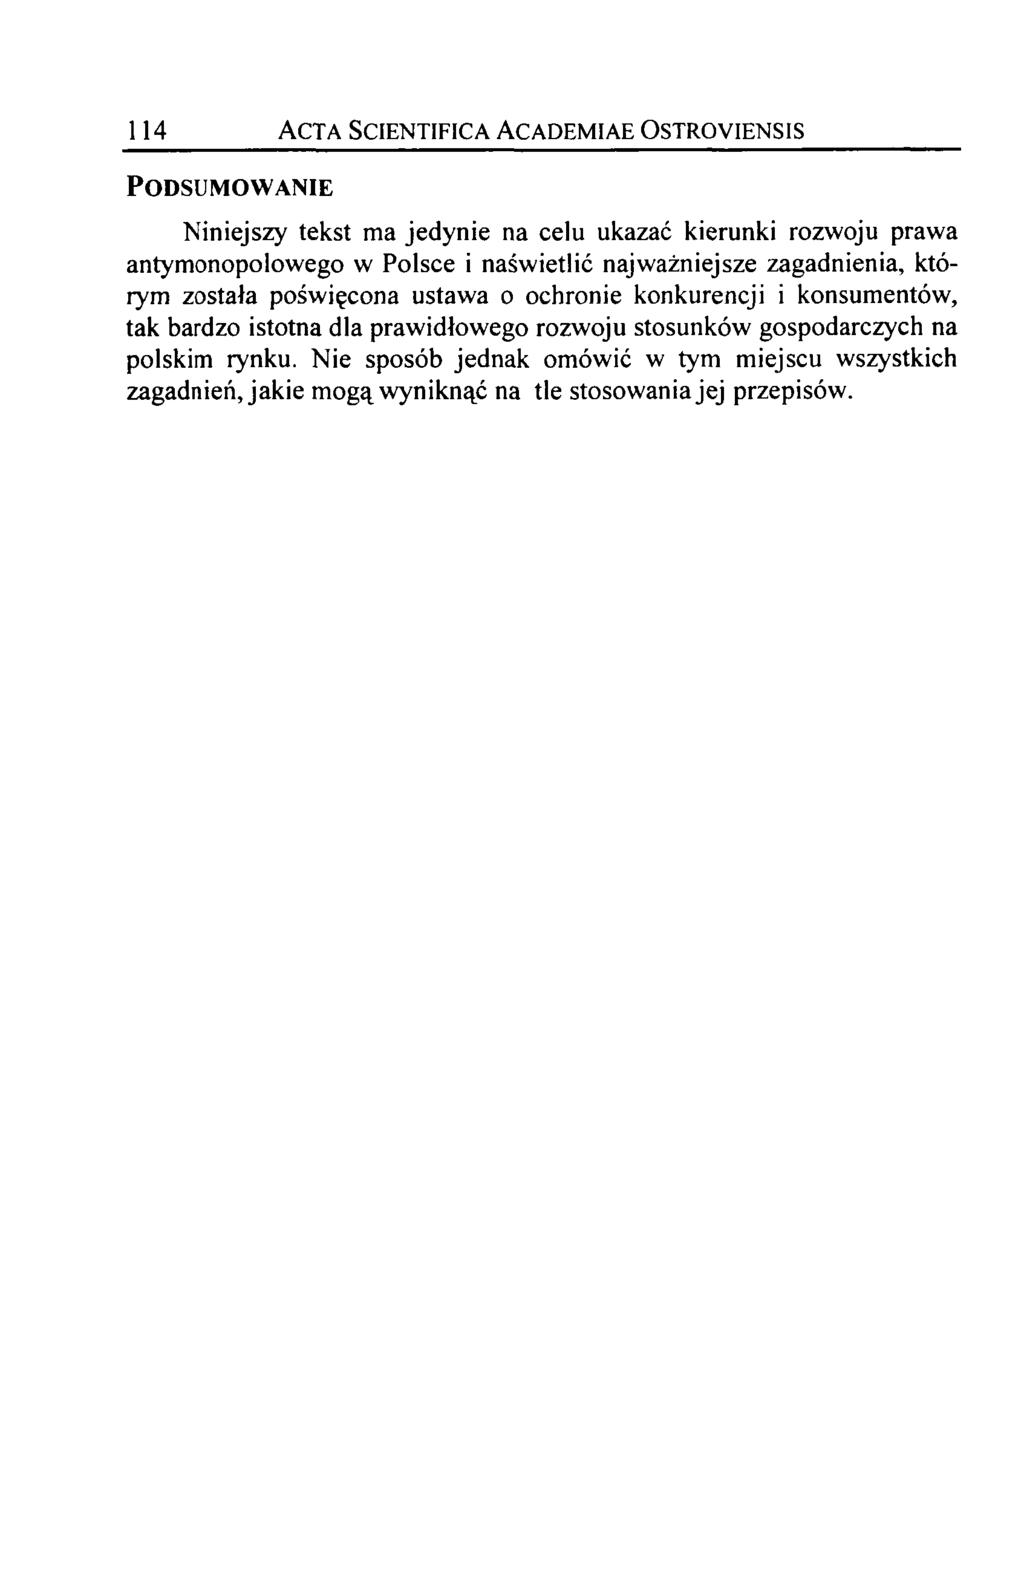 114 Acta Scientifica Academiae Ostroyiensis Podsumowanie Niniejszy tekst ma jedynie na celu ukazać kierunki rozwoju prawa antymonopolowego w Polsce i naświetlić najważniejsze zagadnienia, którym